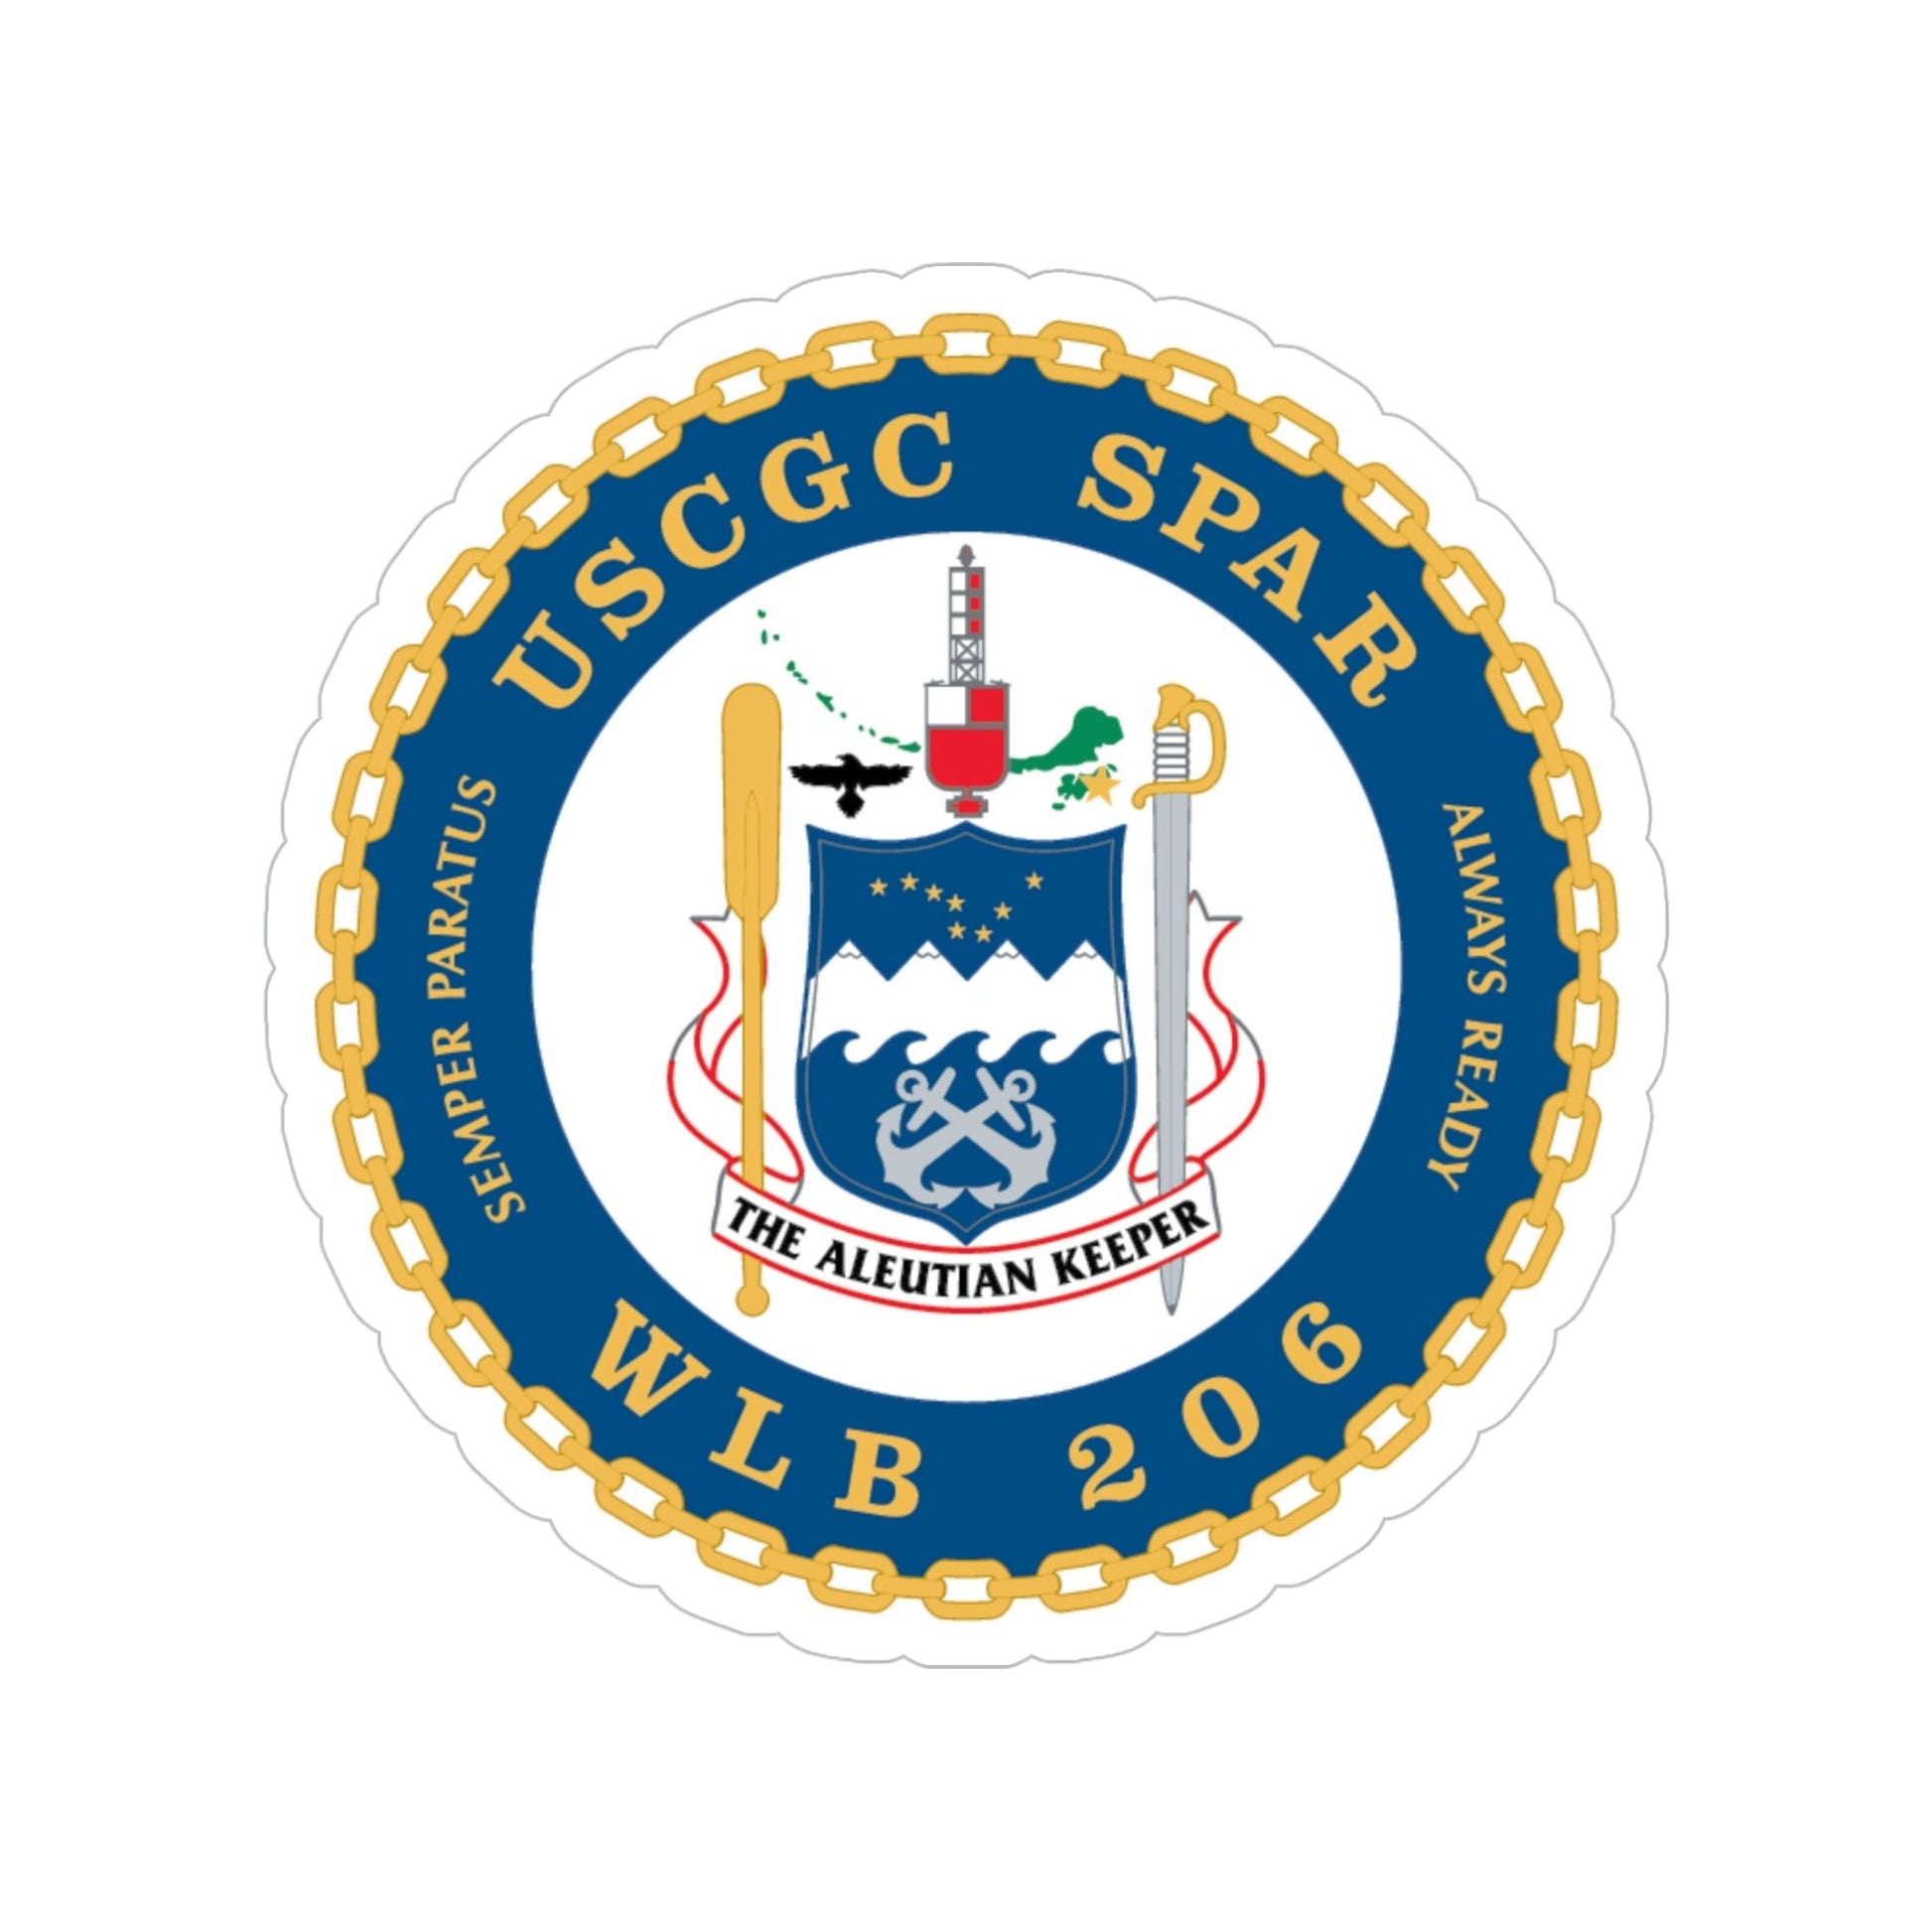 USCGC Spar WLB 206 (U.S. Coast Guard) Transparent STICKER Die-Cut Vinyl Decal-5 Inch-The Sticker Space